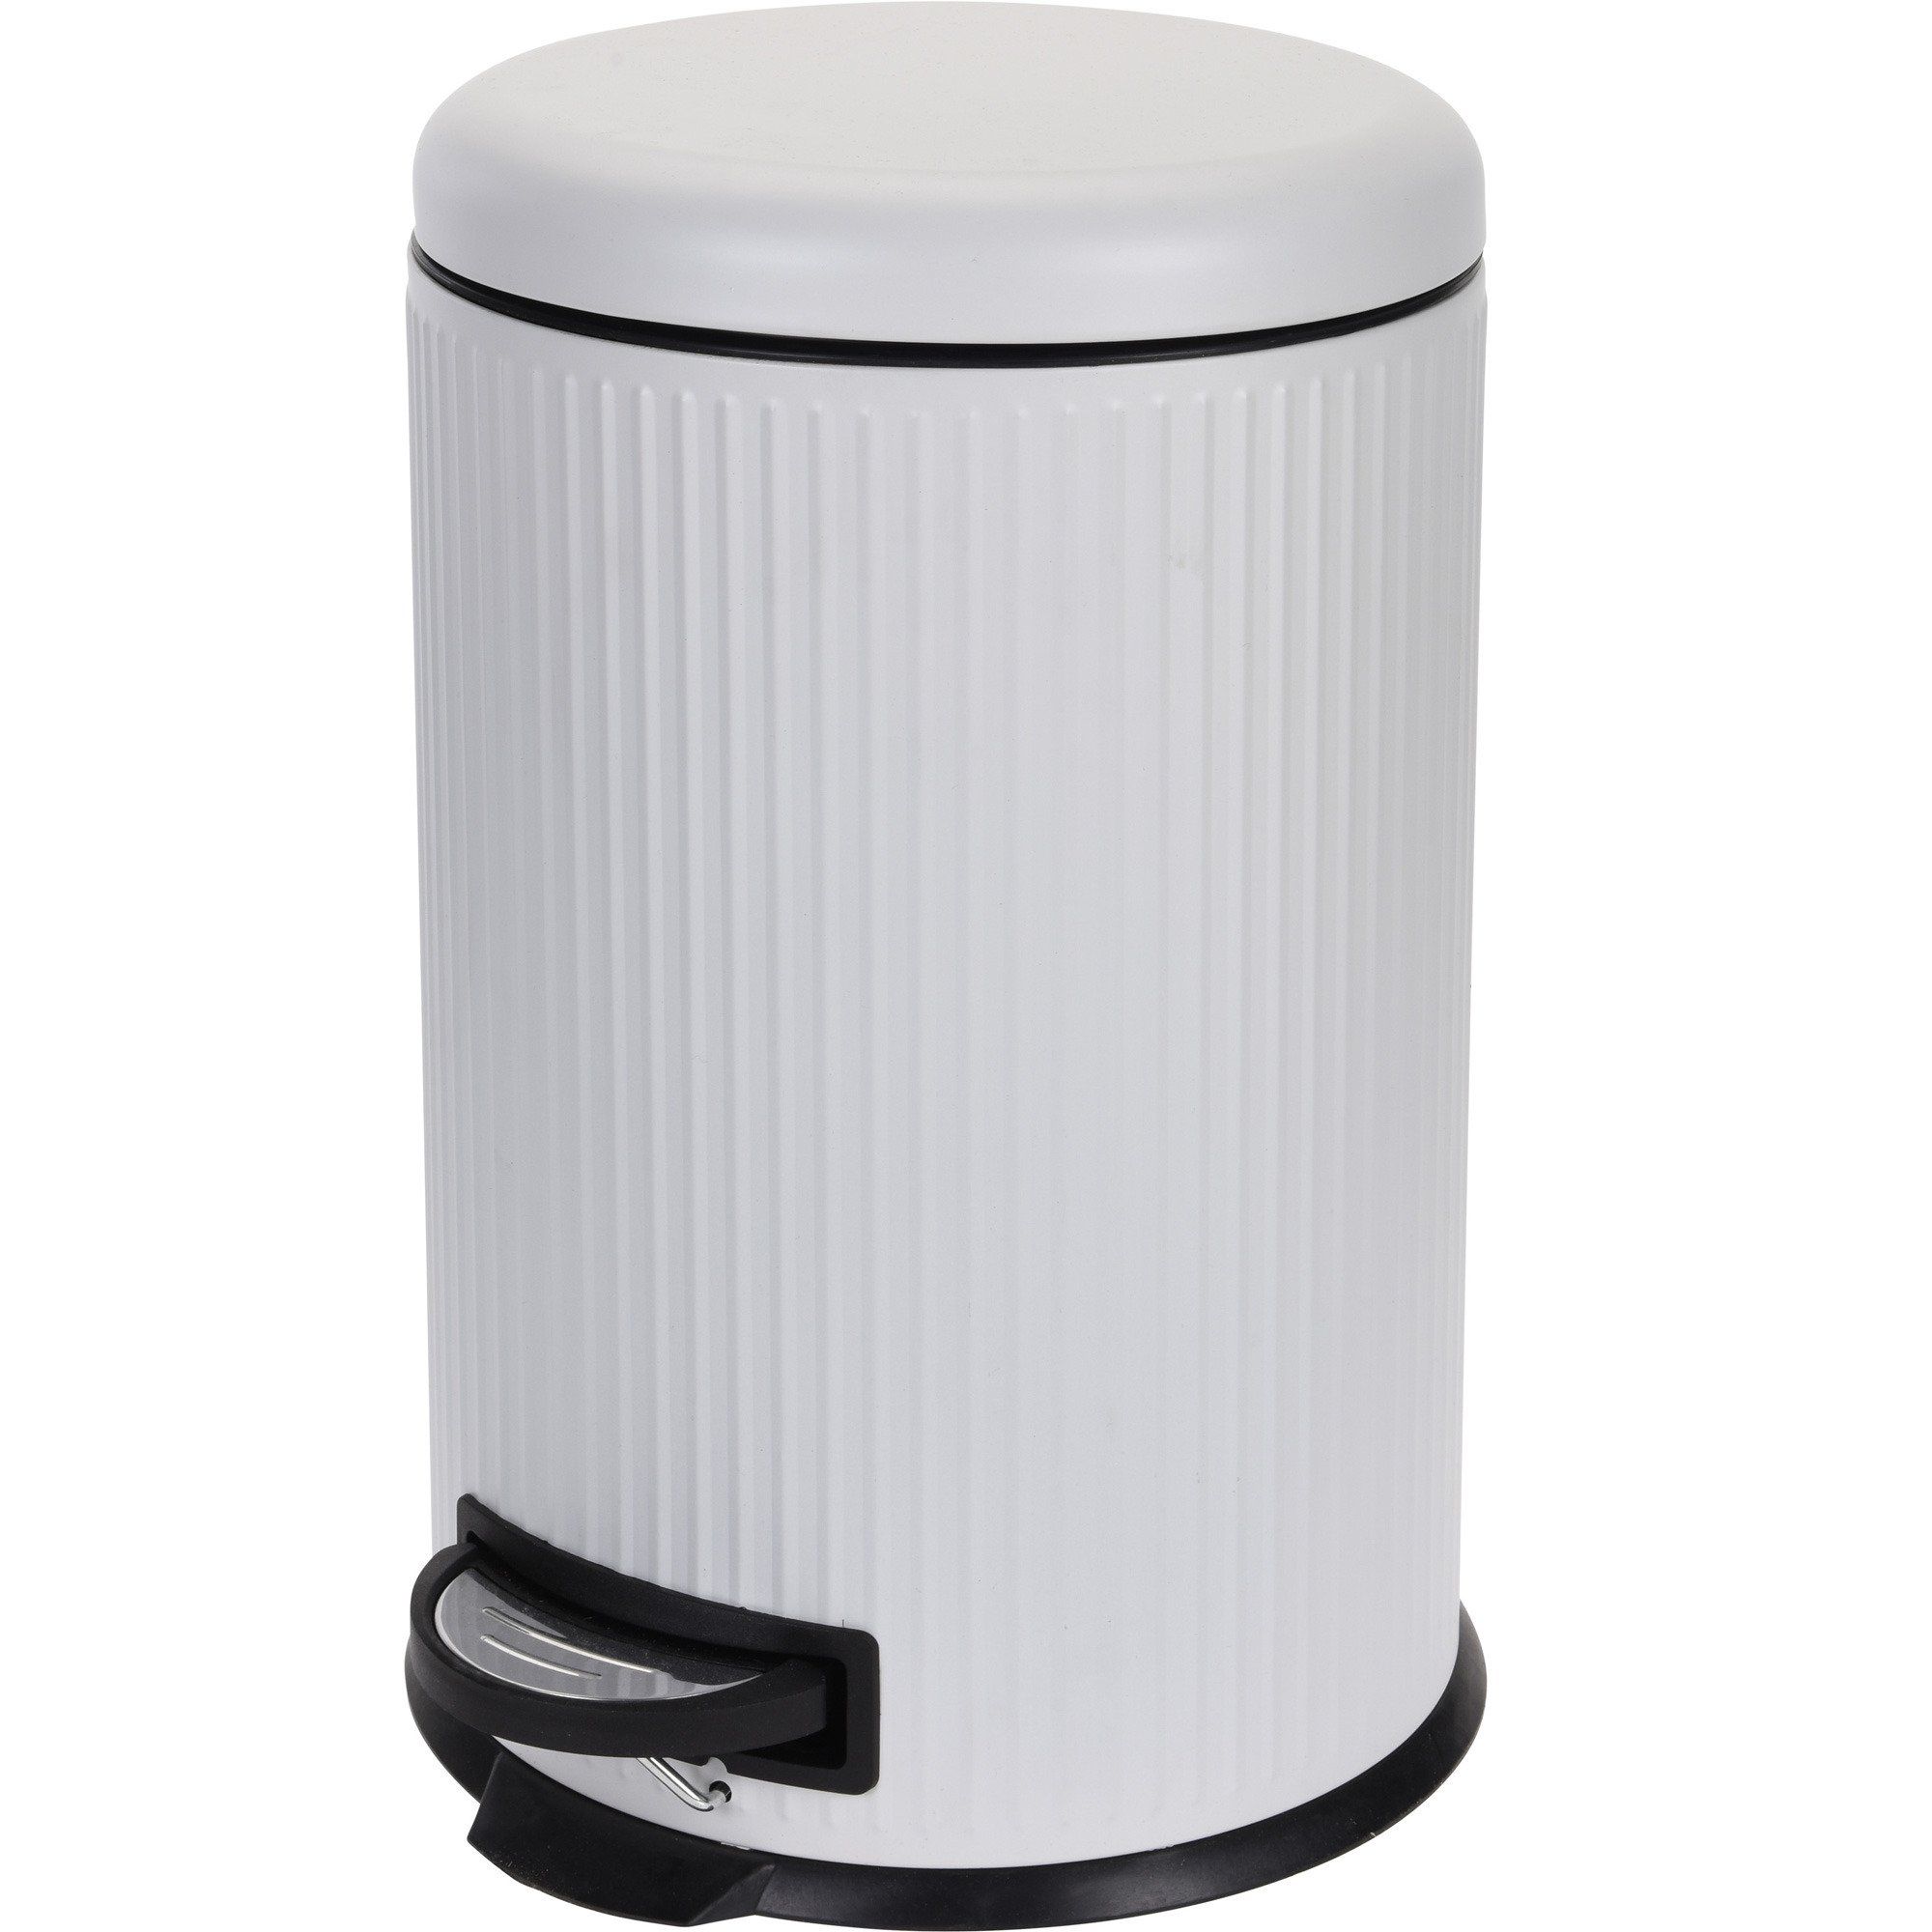 Storagesolutions Odpadkový koš SOFT CLO, 20 l, bílá barva - EMAKO.CZ s.r.o.